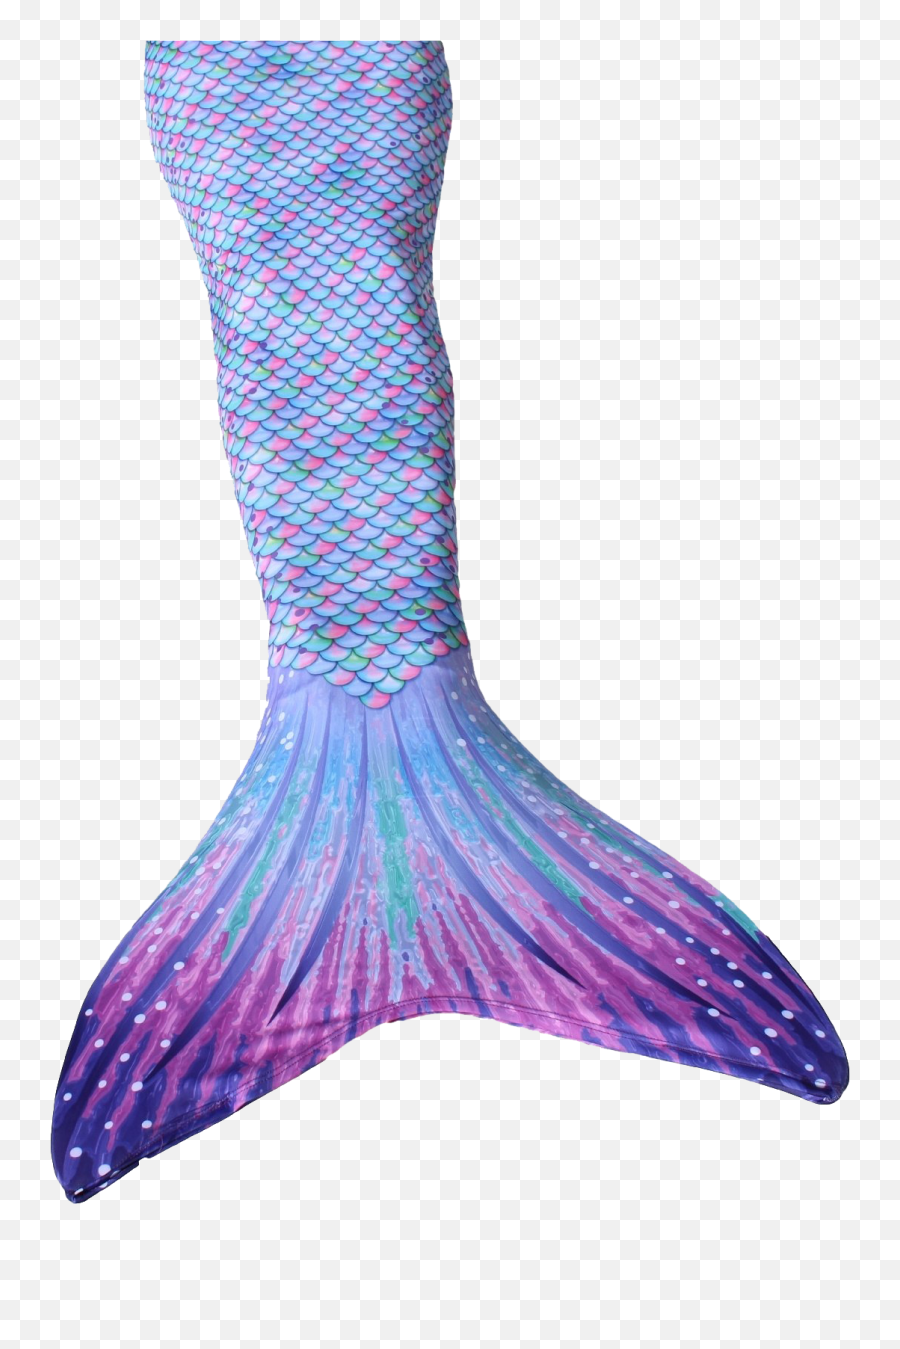 Mermaid Tail Png Image - Purple Mermaid Tails For Kids,Mermaid Tail Png